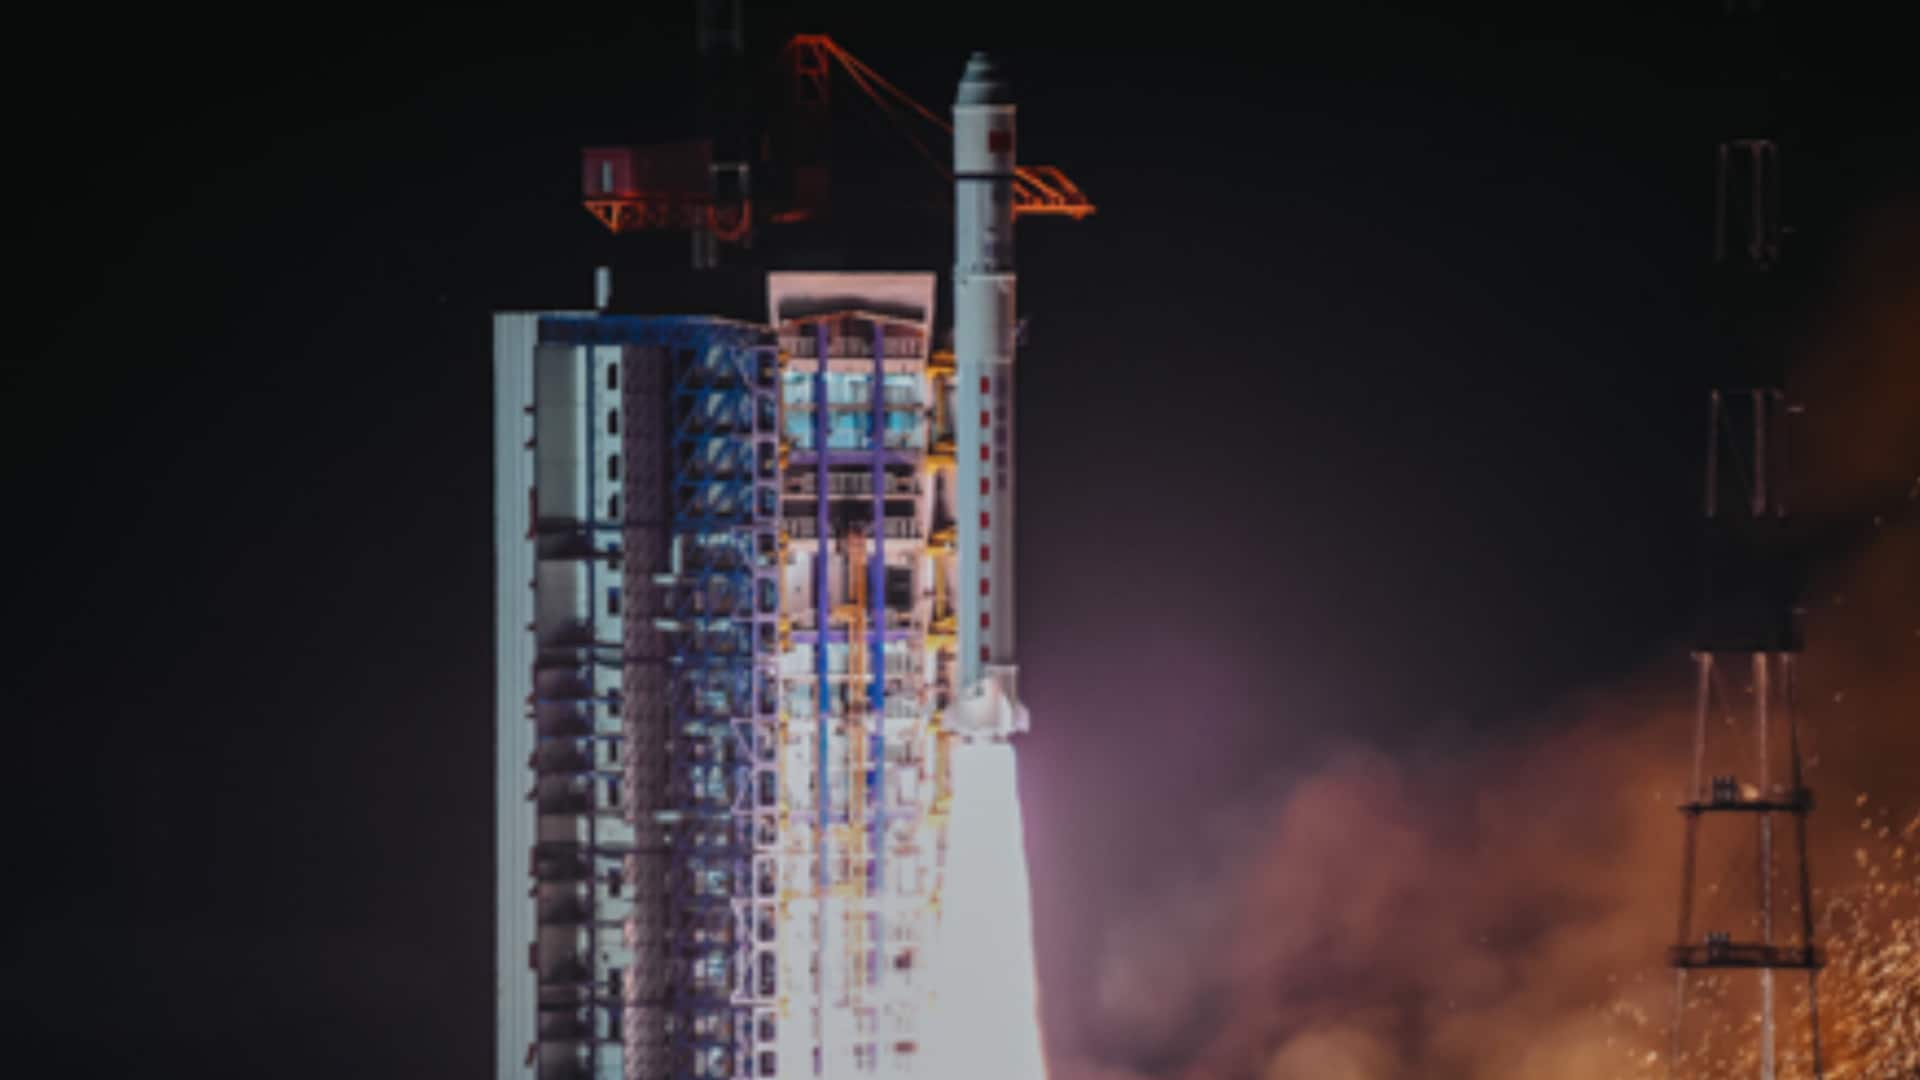 चीन कल अंतरिक्ष में भेजेगा पहला नागरिक एस्ट्रोनॉट, जानें इस मिशन से जुड़ी जानकारी